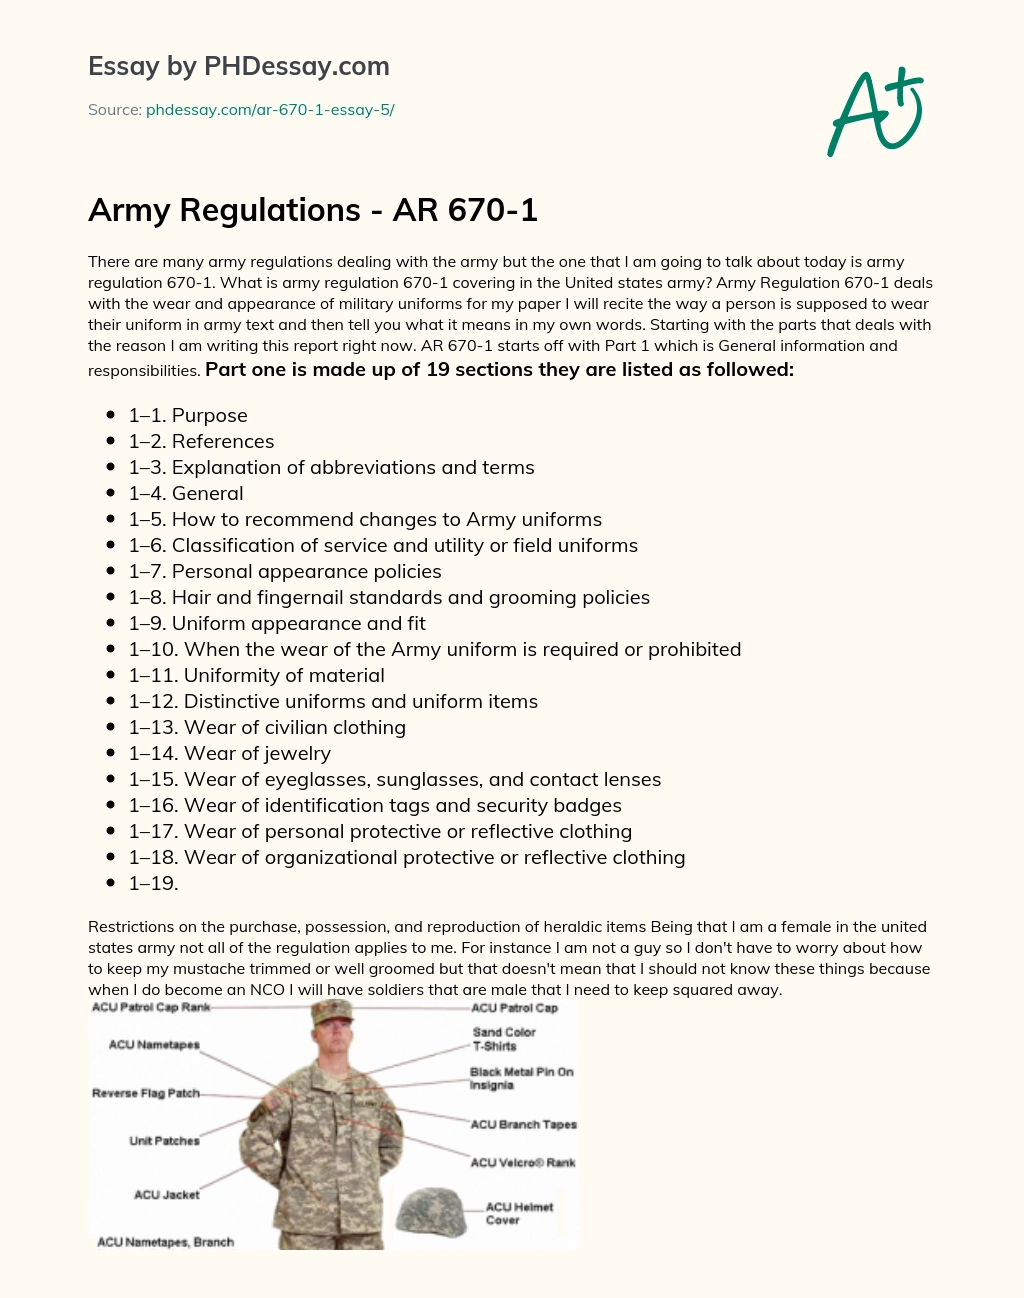 Army Regulations – AR 670-1 essay